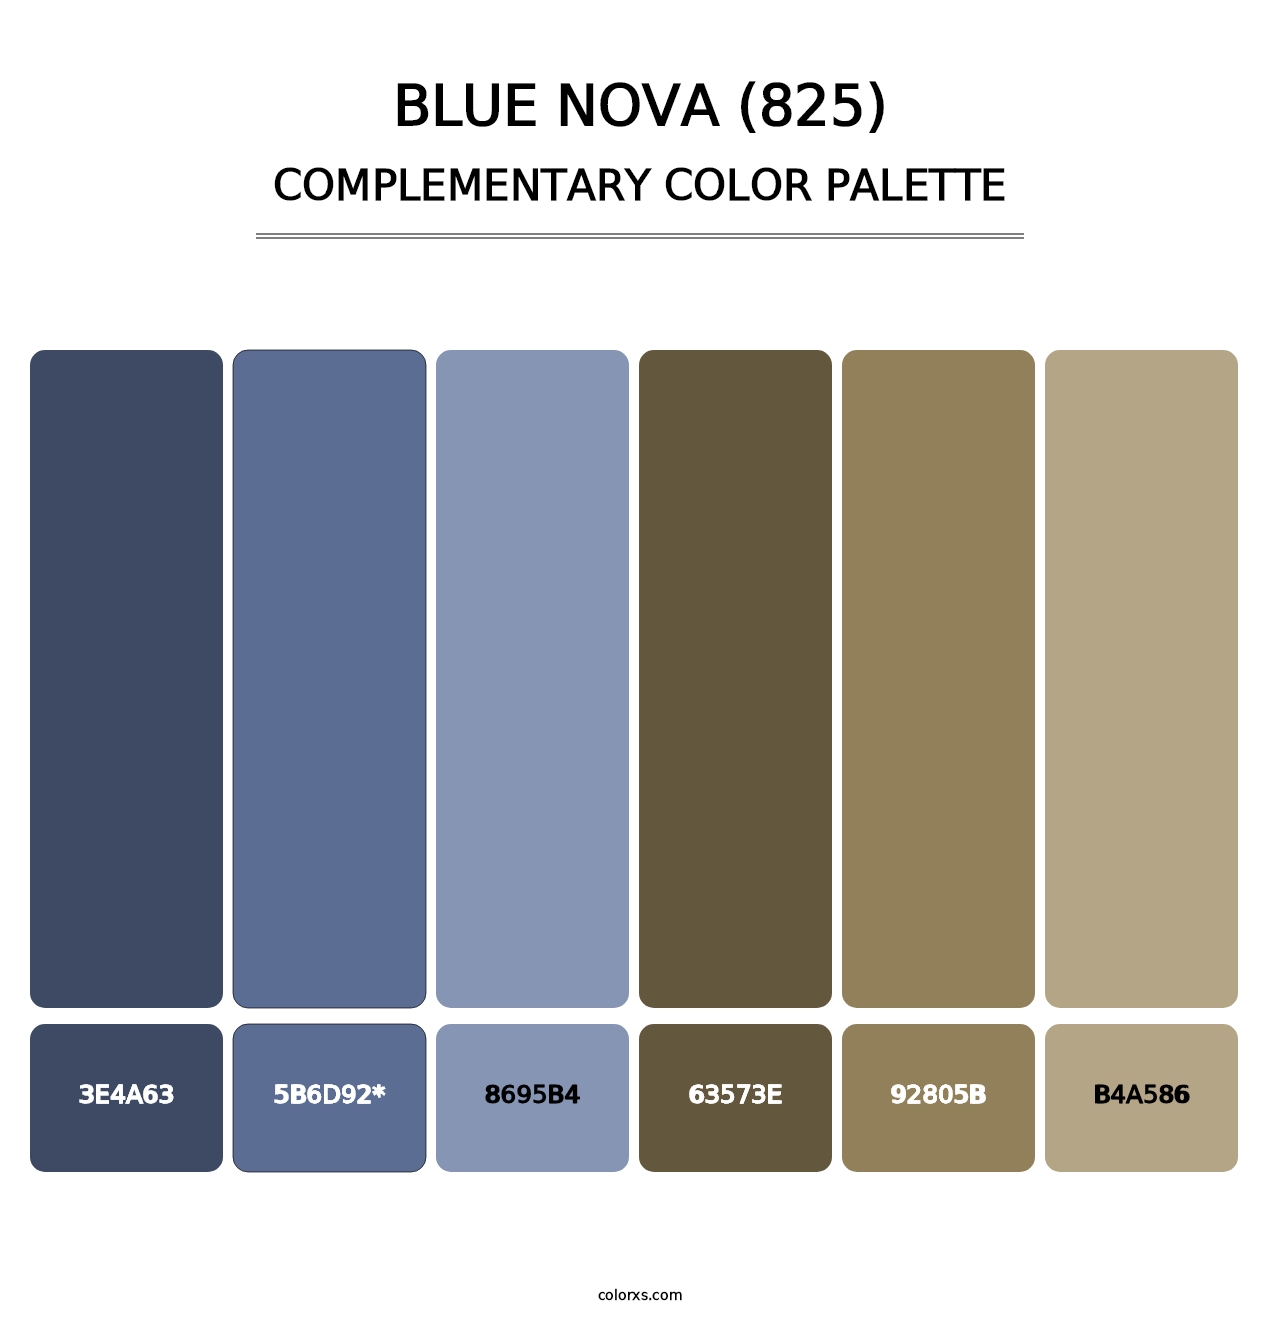 Blue Nova (825) - Complementary Color Palette